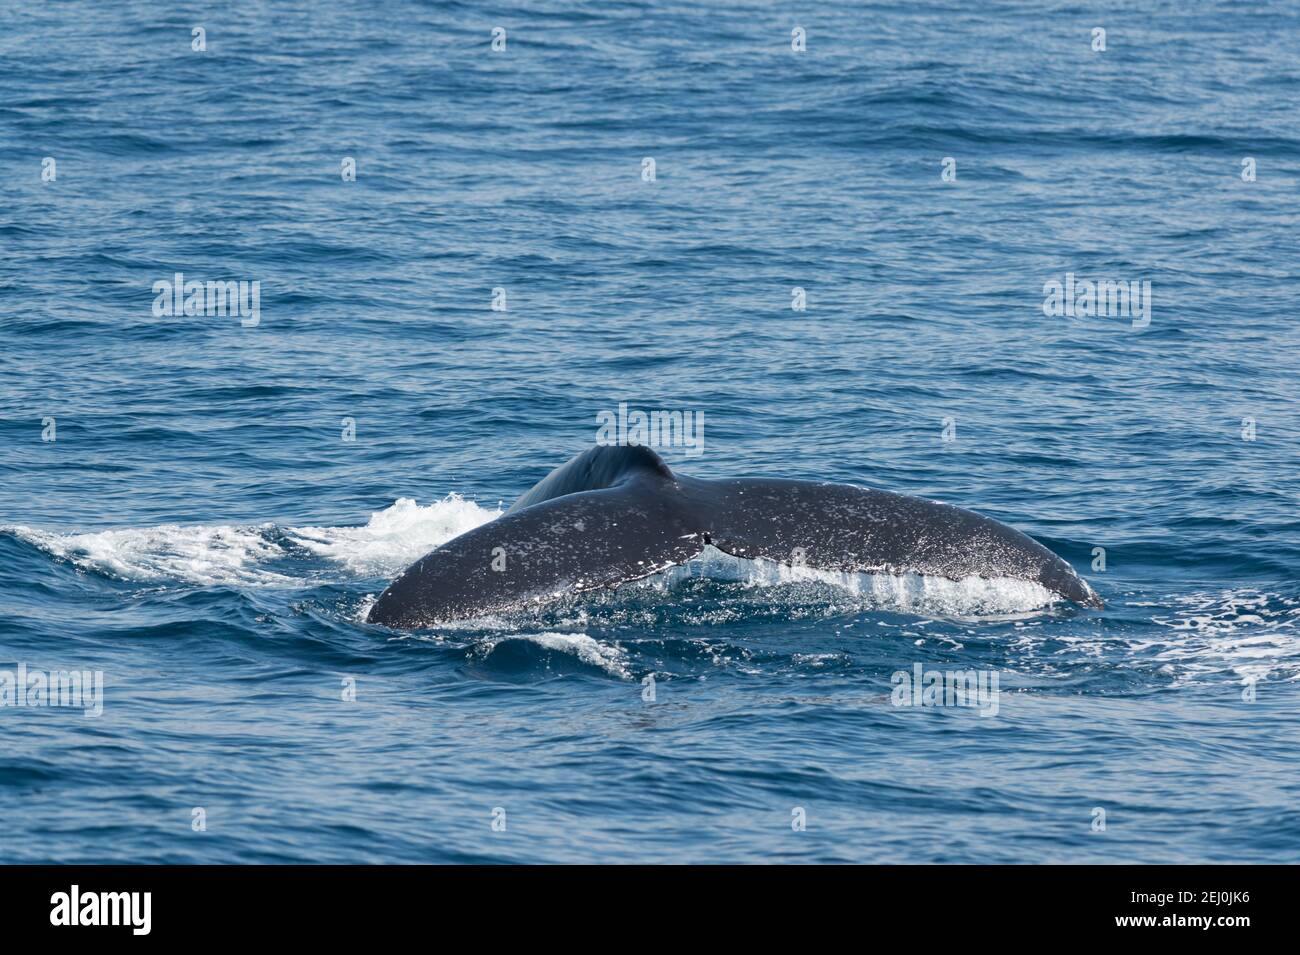 Observación de ballenas jorobadas, Bahía Merimbula, Nueva Gales del Sur, Australia. Foto de stock